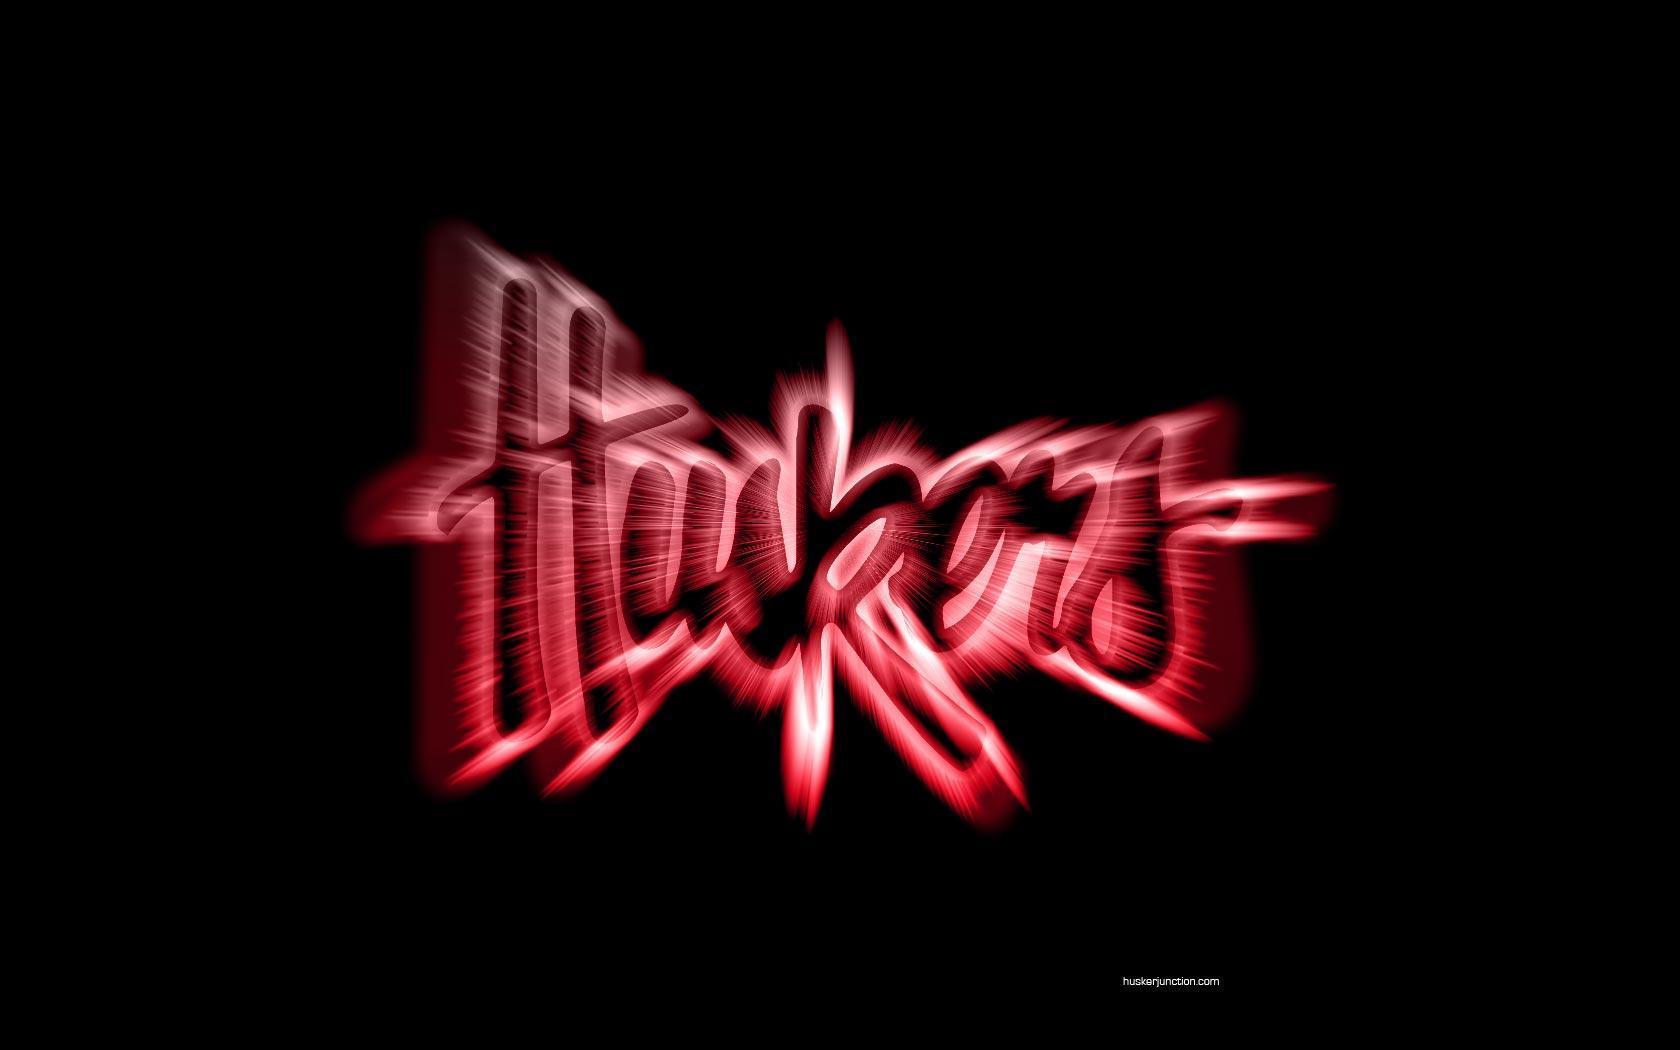 Husker Logo - Nebraska Cornhuskers Wallpaper (9546297) - Fanpop